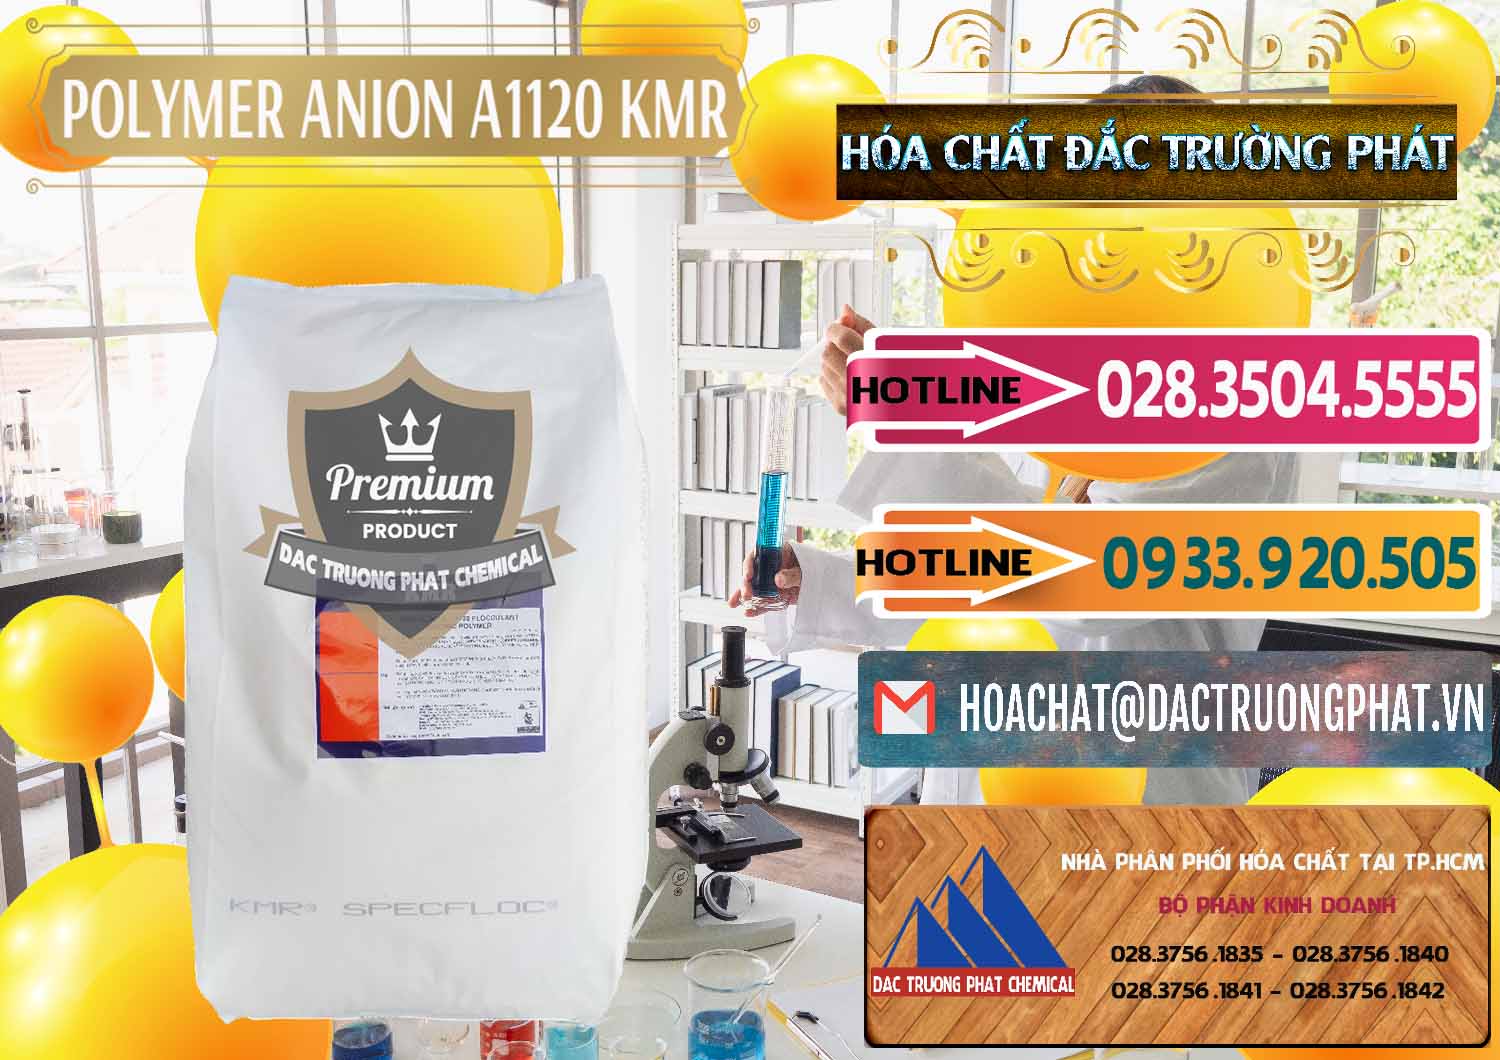 Đơn vị chuyên bán & phân phối Polymer Anion A1120 - KMR Anh Quốc England - 0119 - Nơi chuyên phân phối ( kinh doanh ) hóa chất tại TP.HCM - dactruongphat.vn